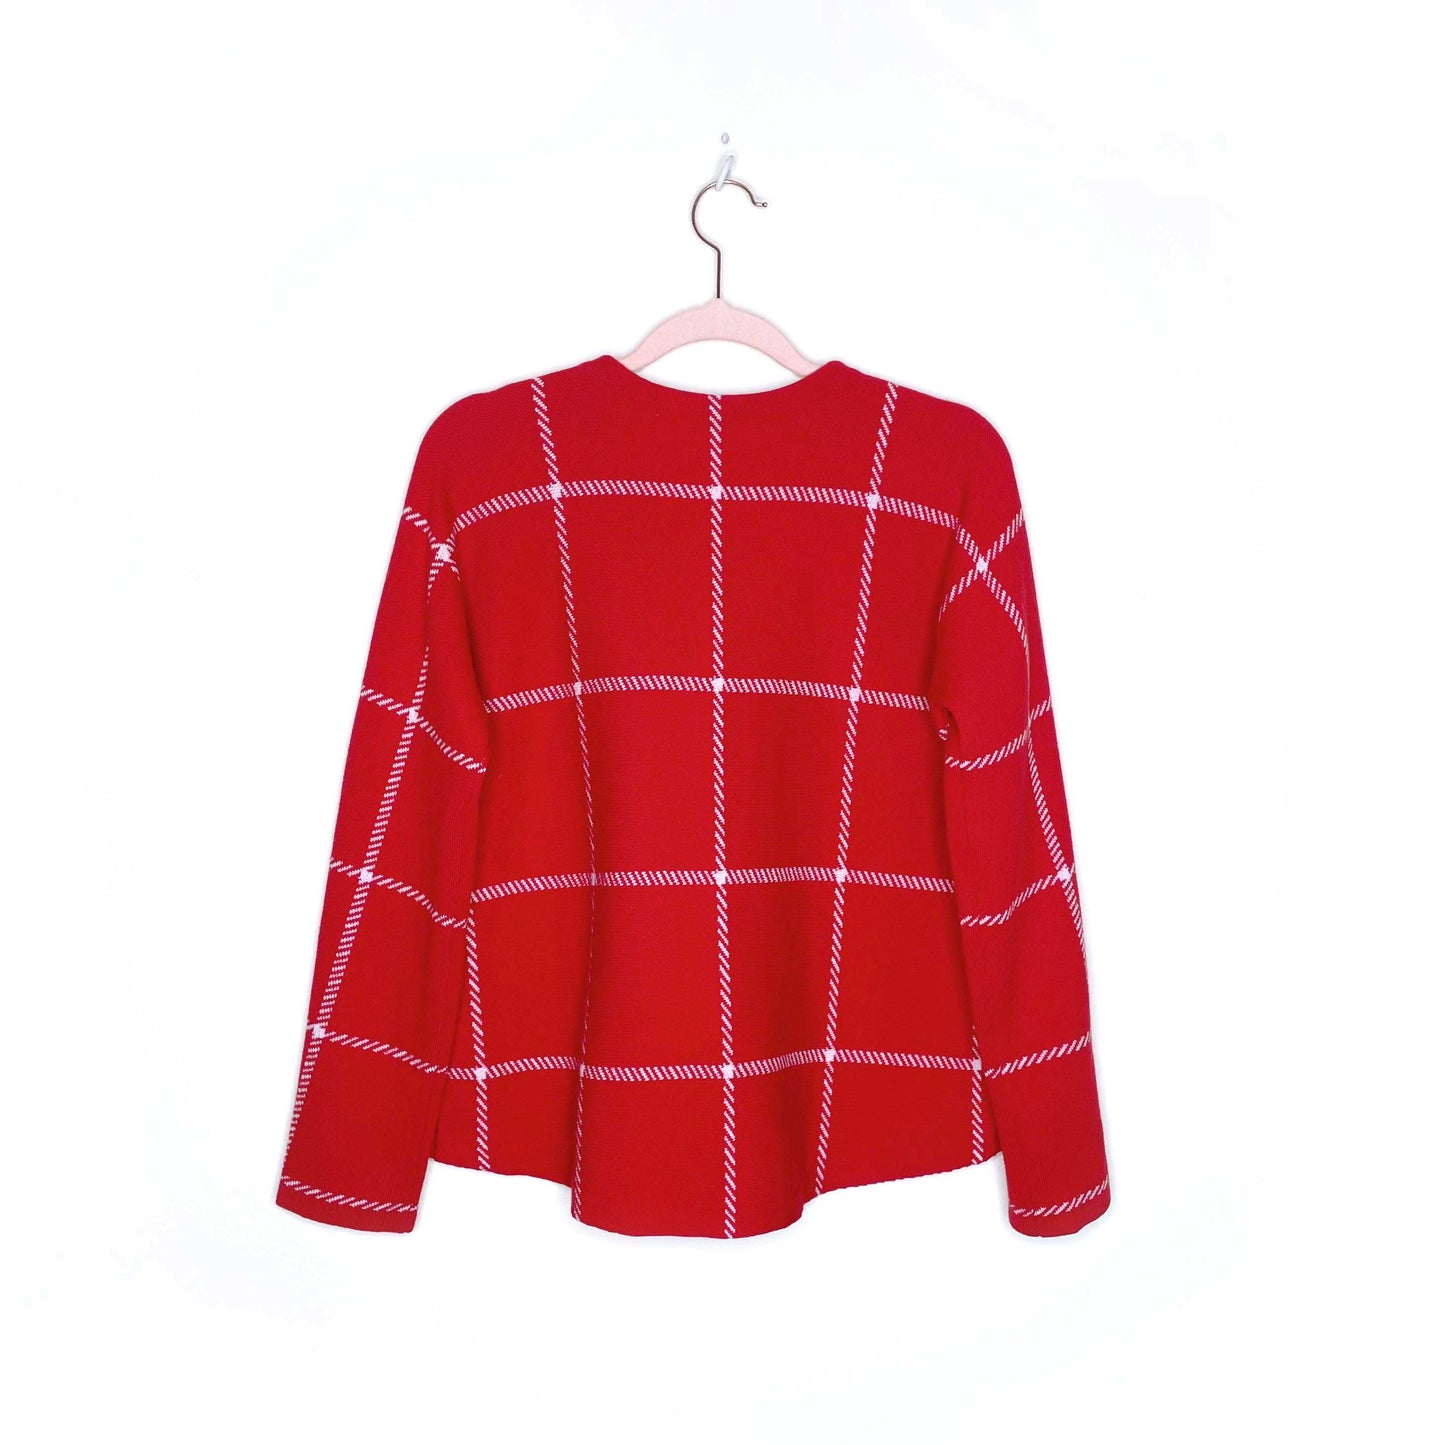 maje red windowpane plaid wool-blend sweater - size 2